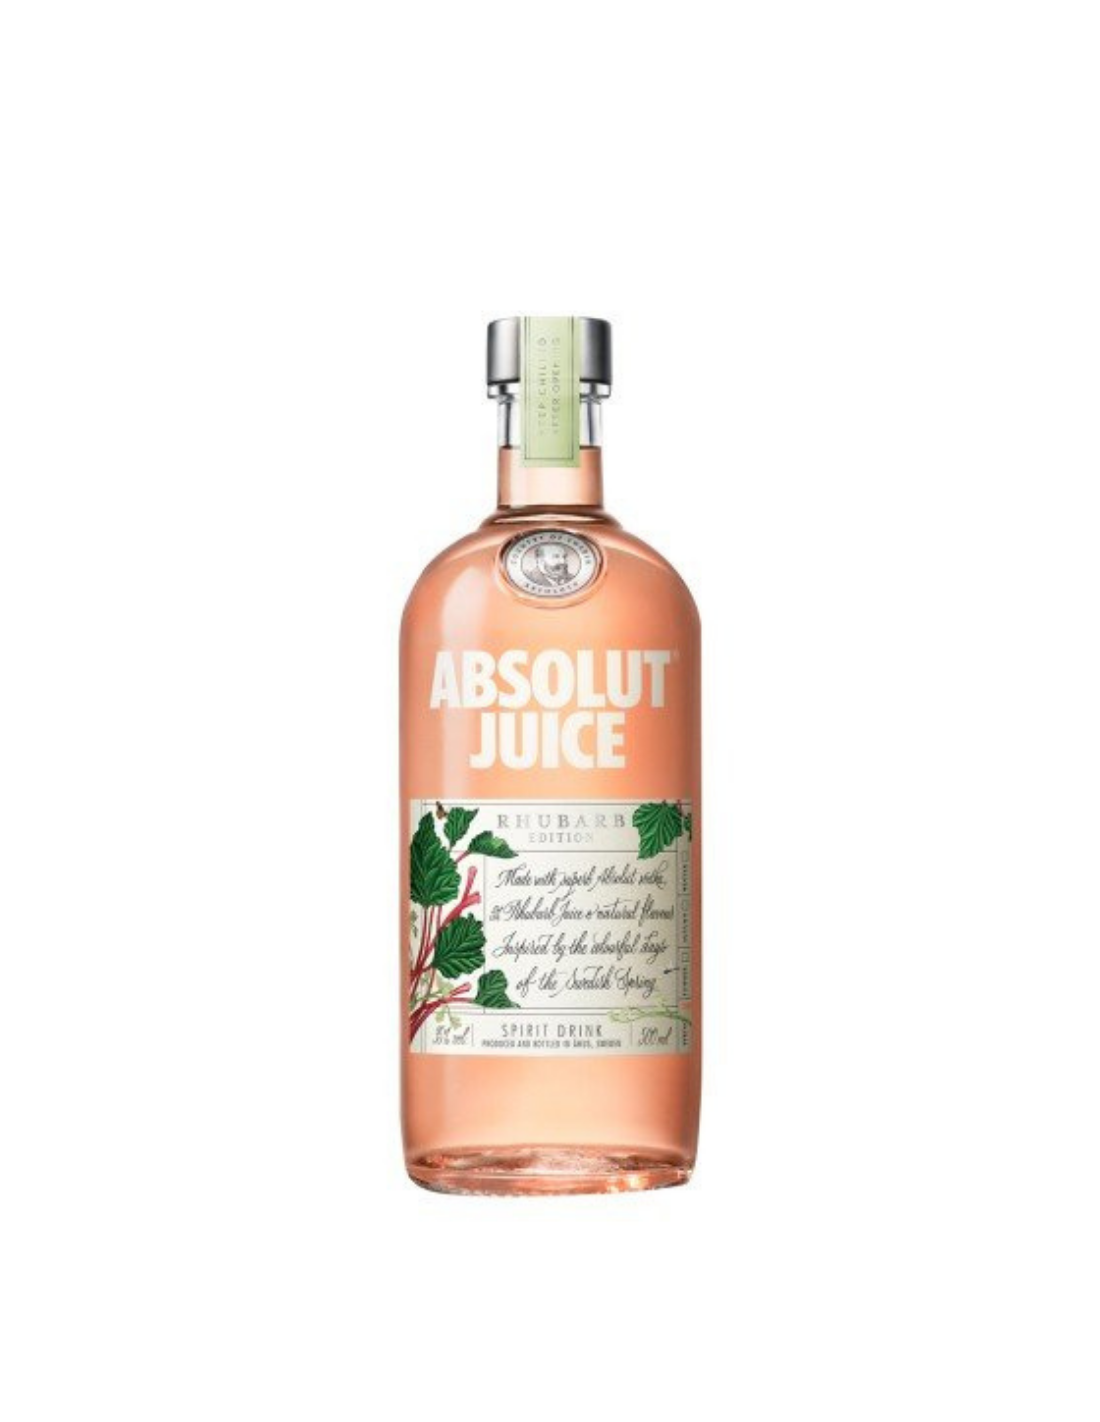 Vodca Absolut Rhubarb Editie Juice, 0.5L, 35% alc., Suedia alcooldiscount.ro